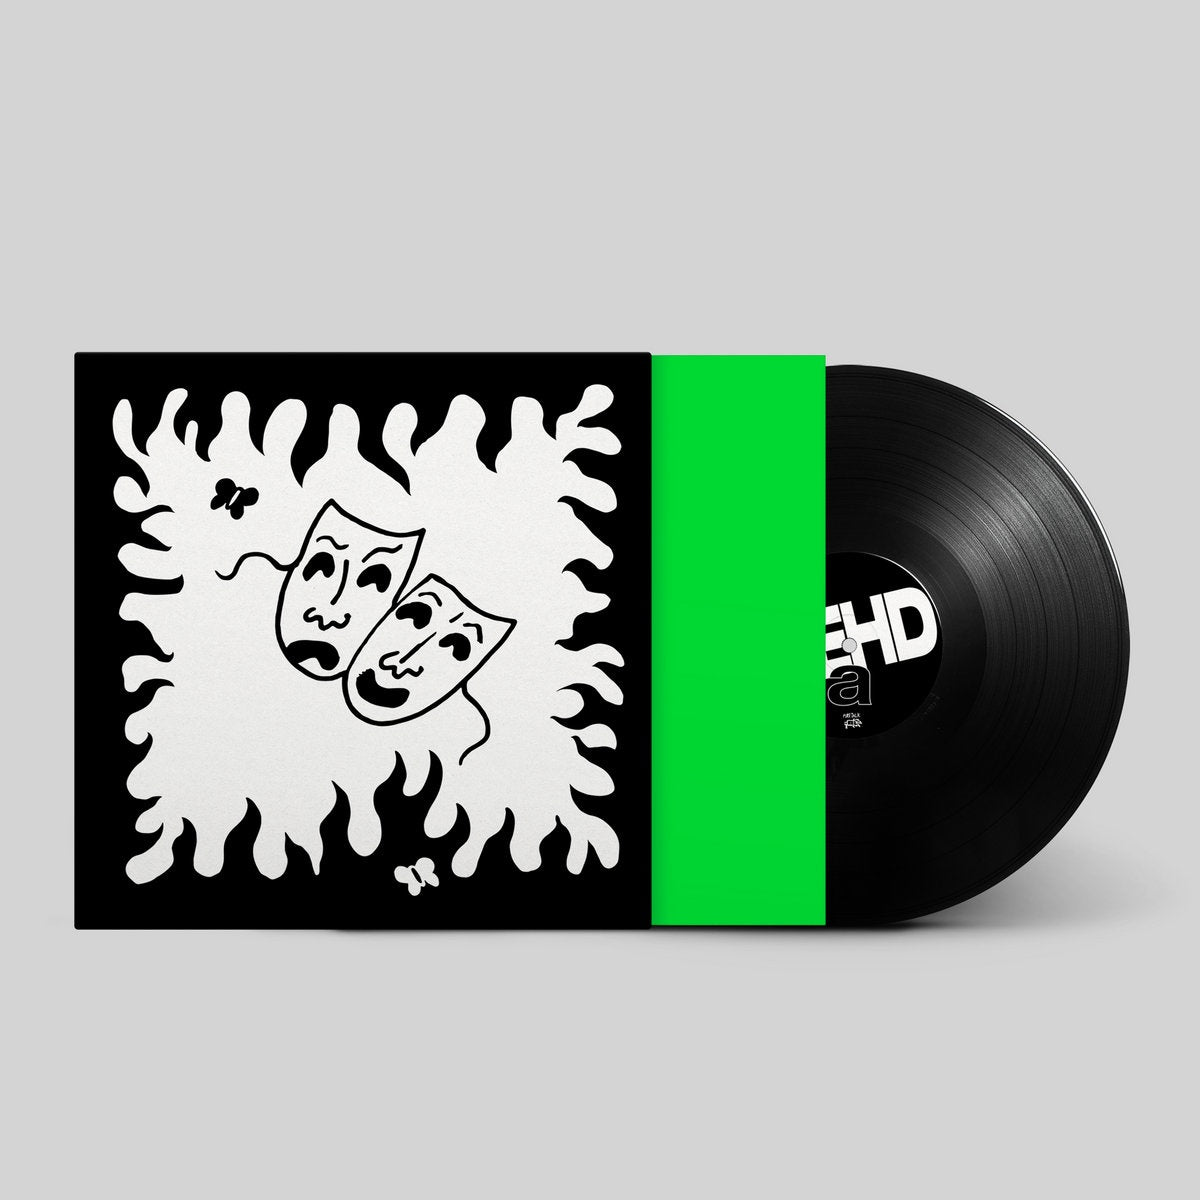 Dehd – Flower of Devotion - New LP Record 2020 Fire Talk Vinyl - Chicago Indie Rock